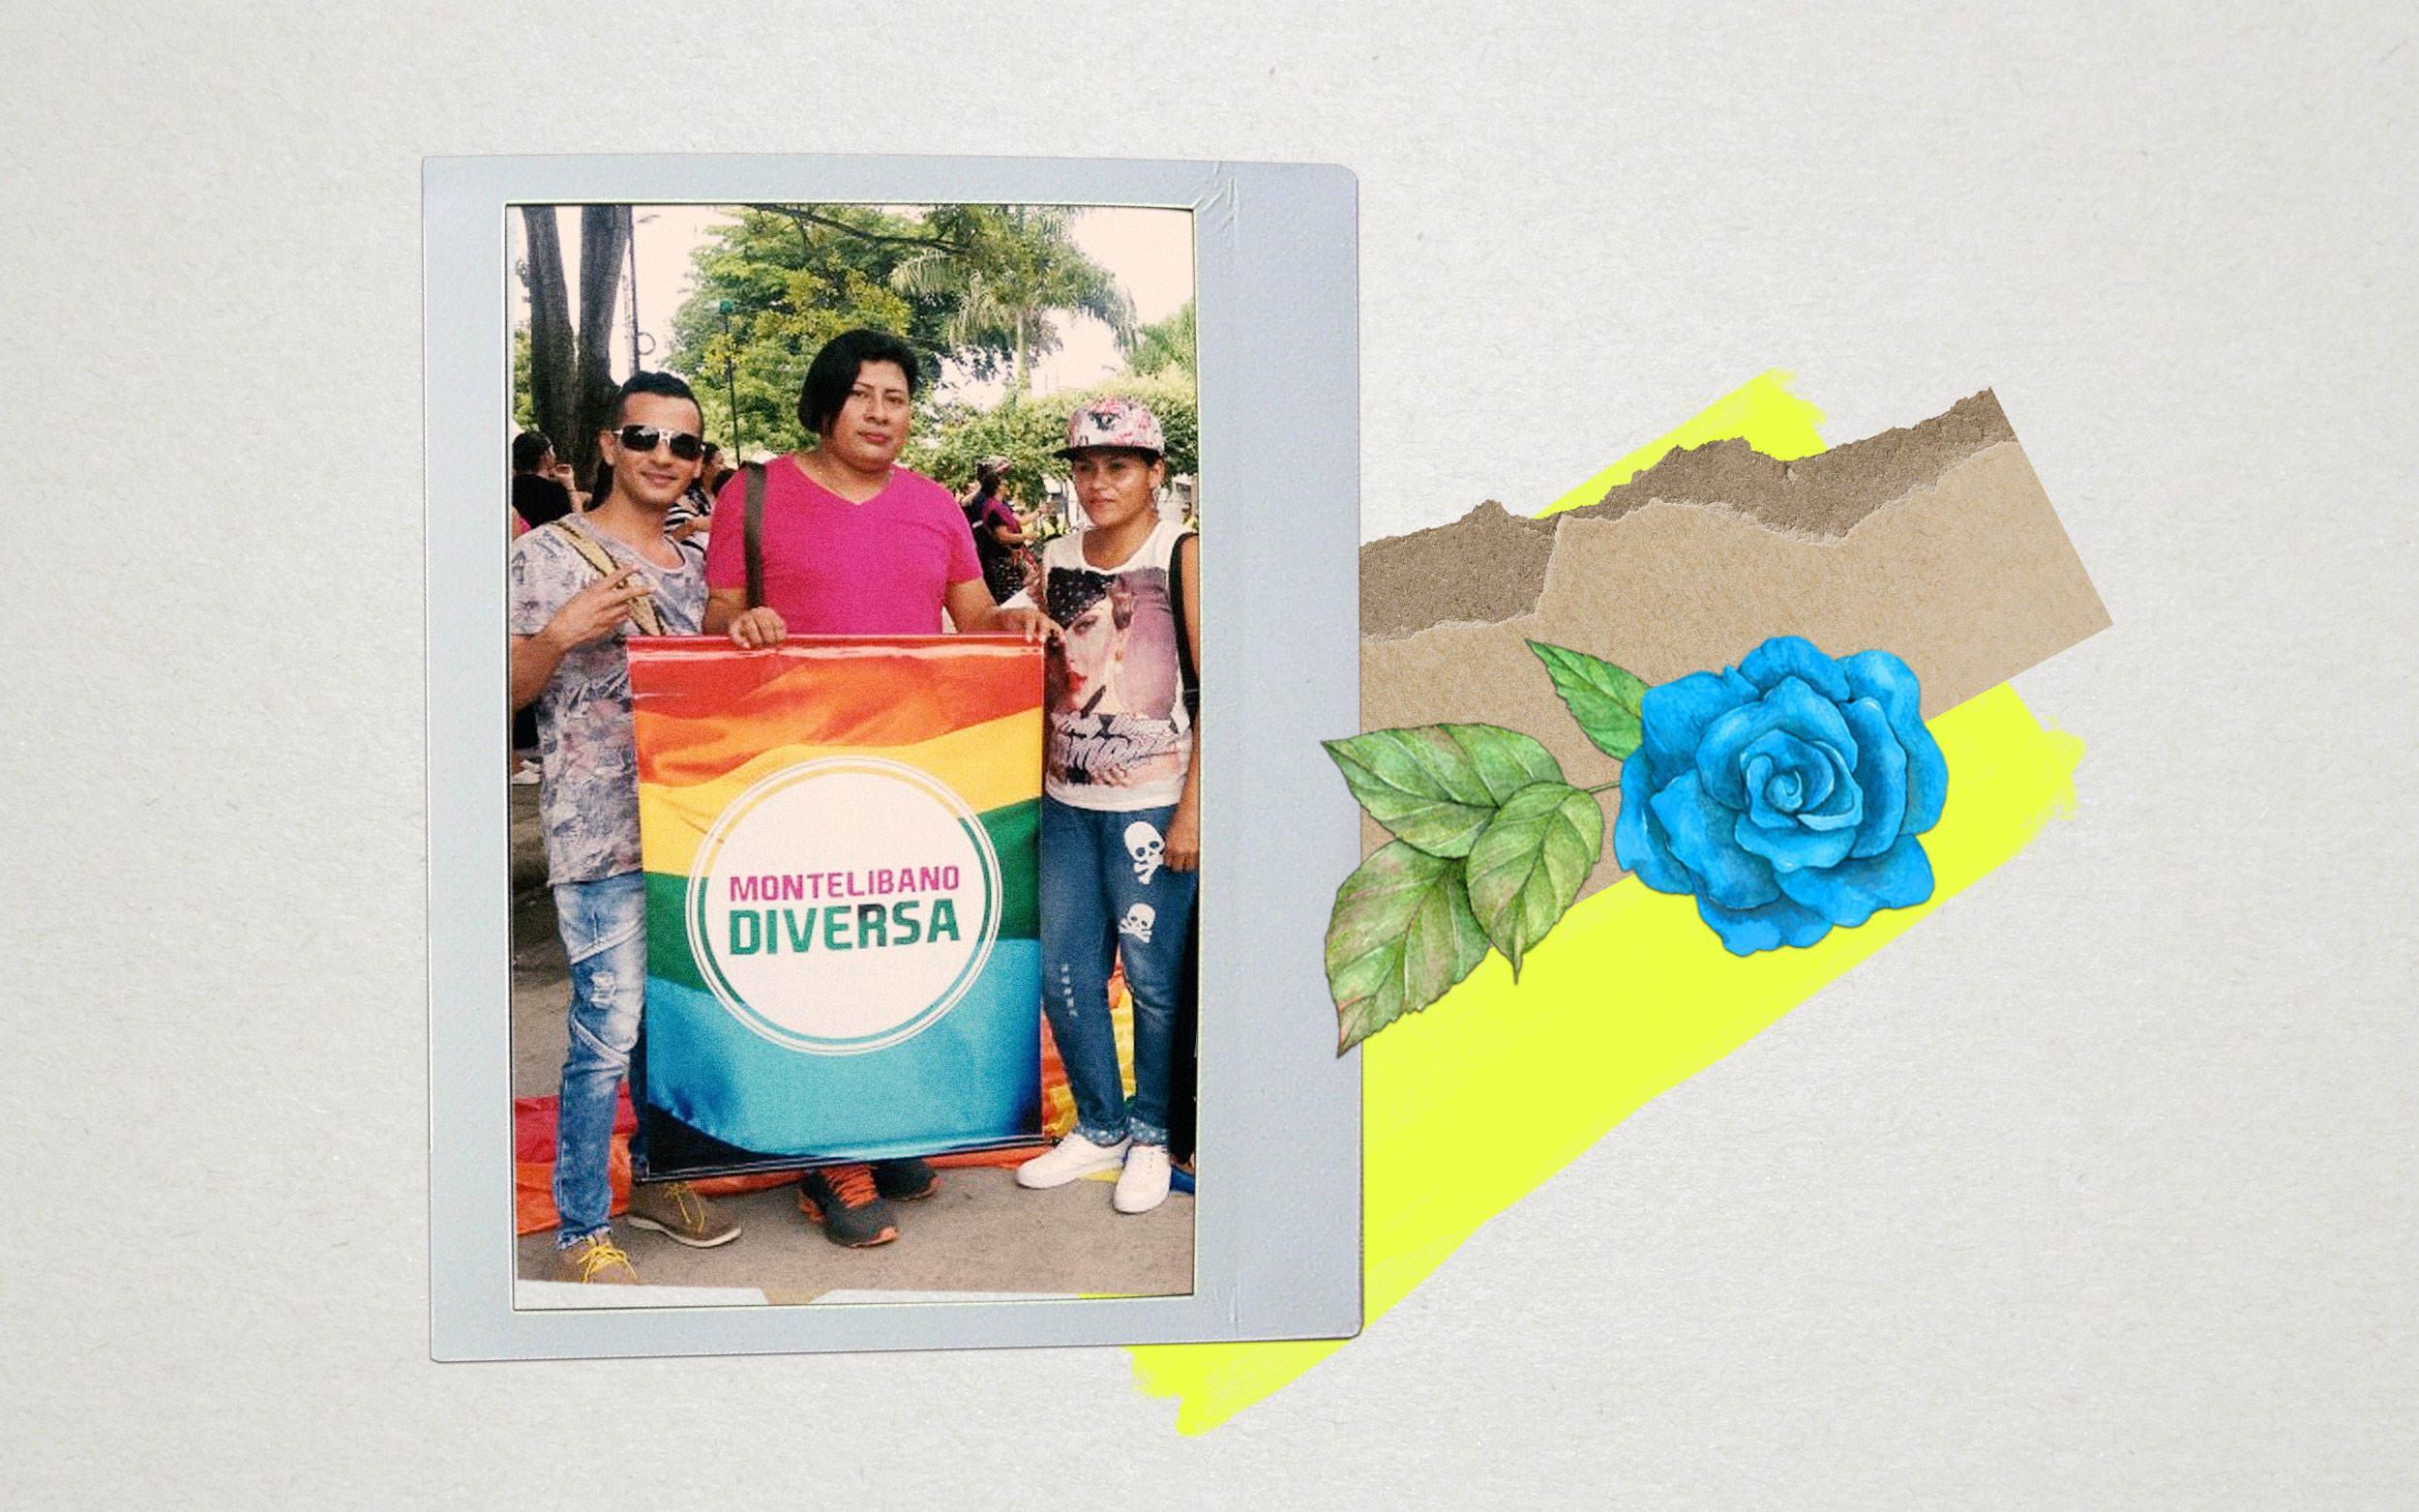 arco polaroid sobre foto de Rosita Avilez y dos personas sosteniendo bandera de Montelibano Diversa, abajo una rosa azúl con hojas